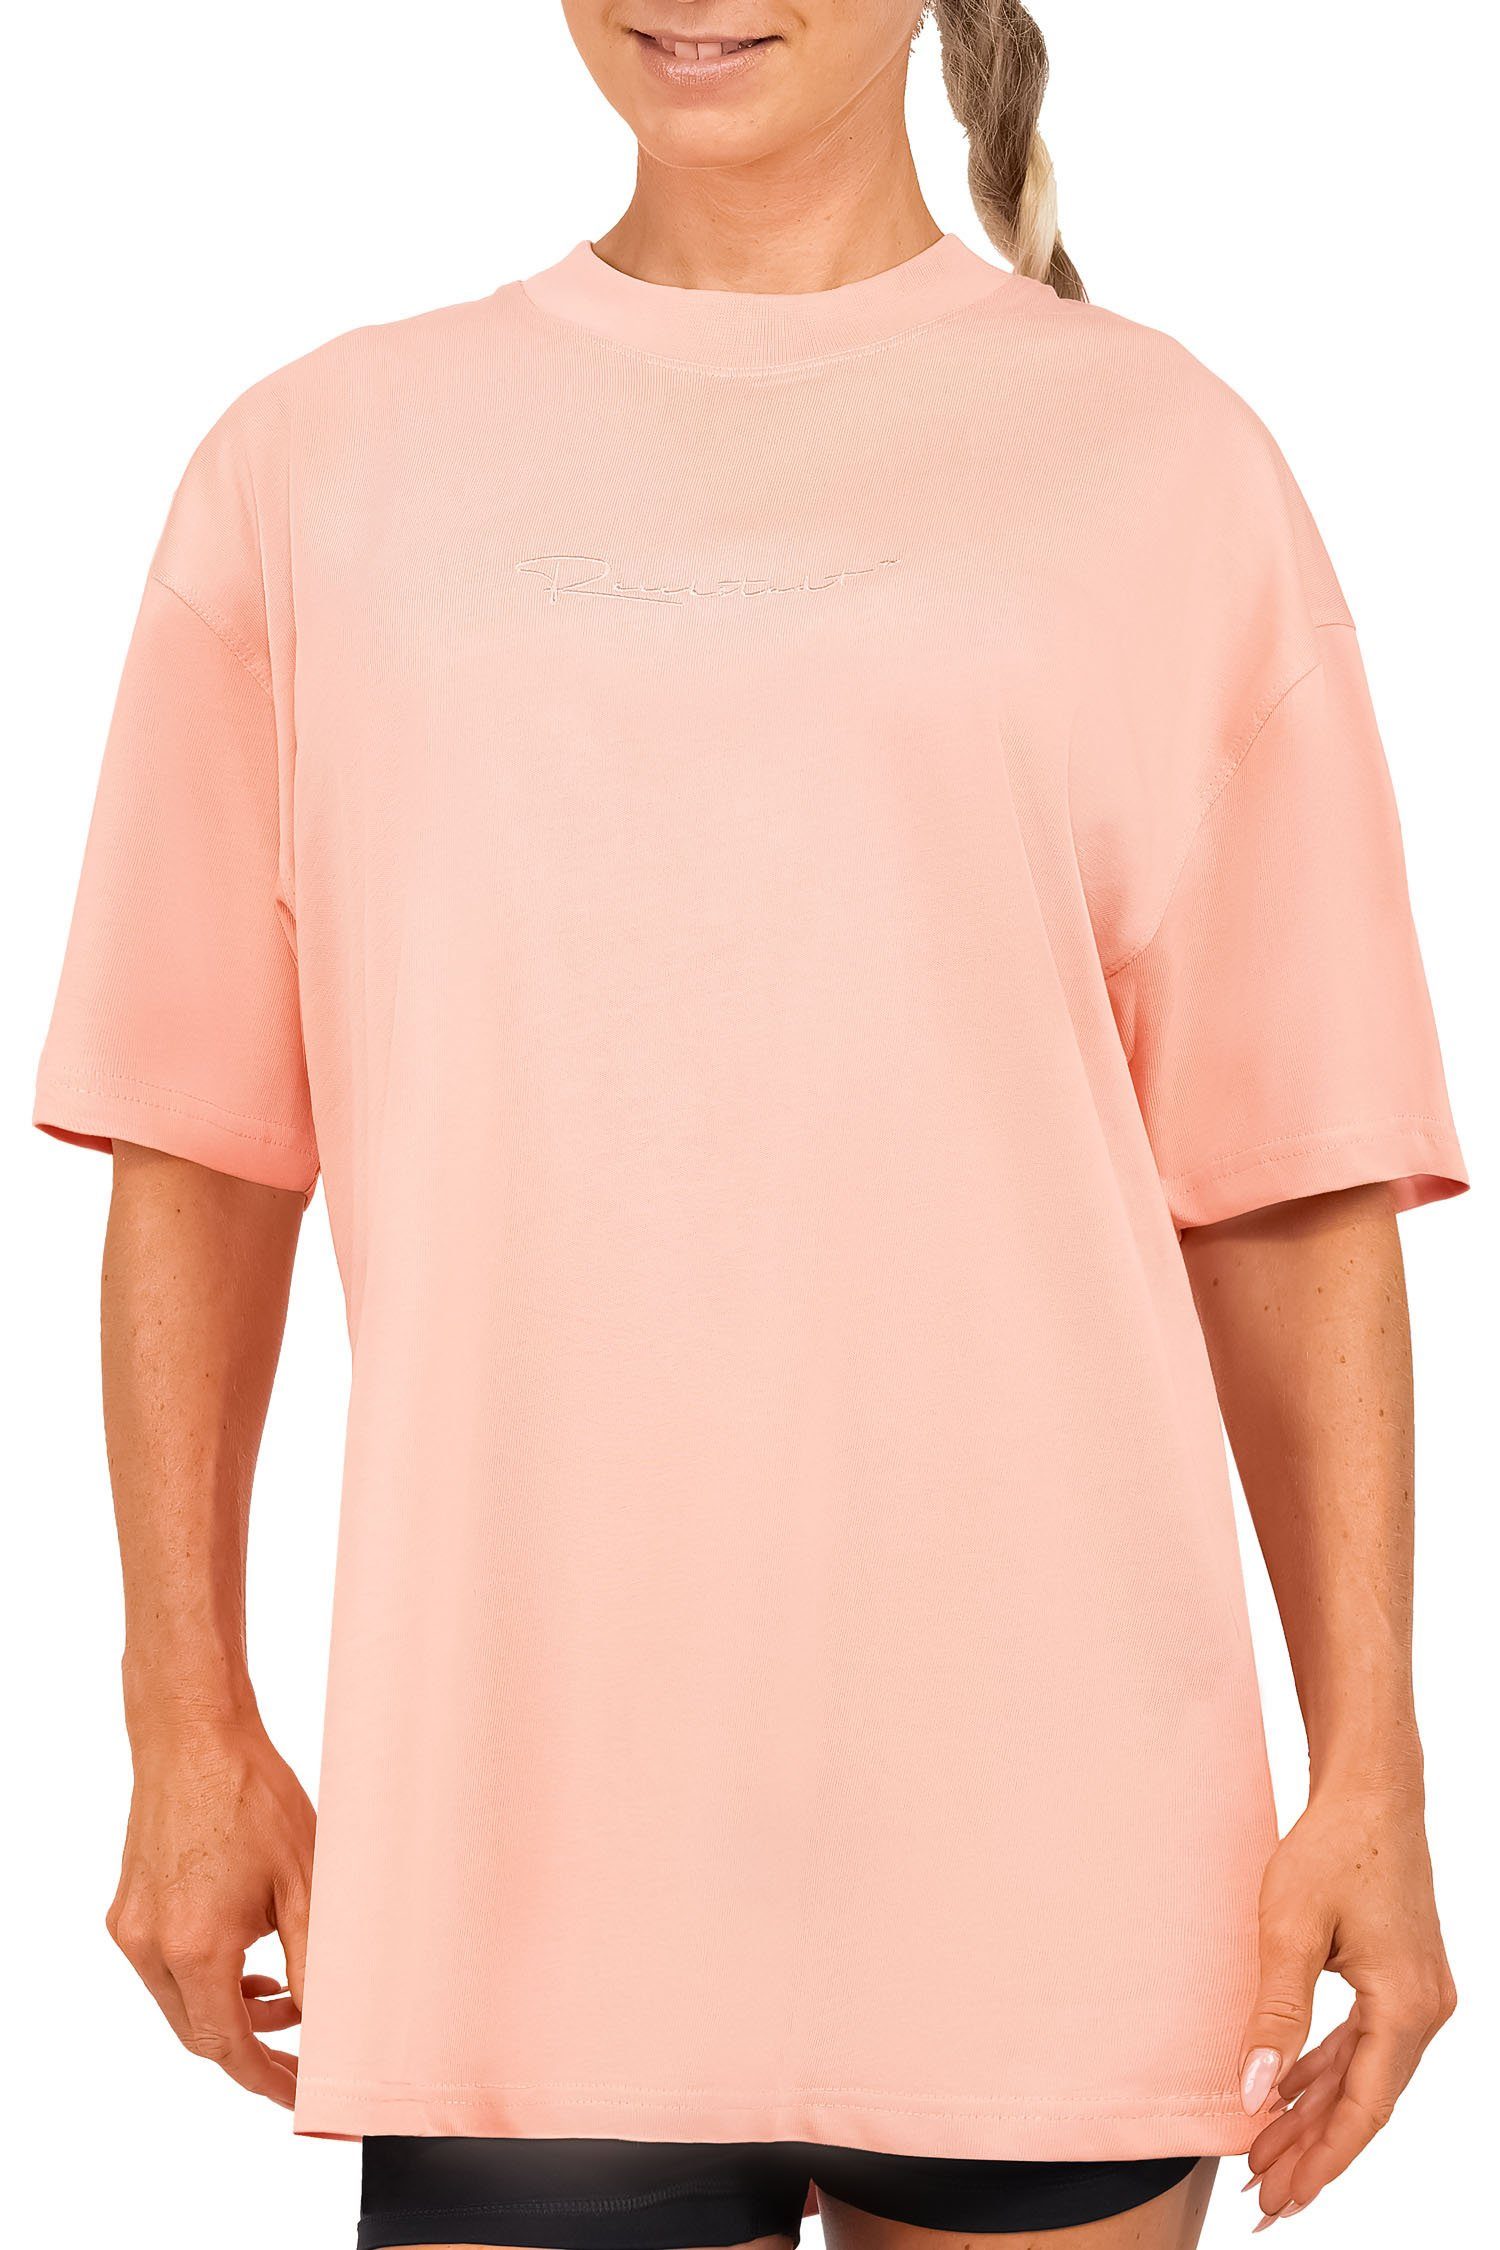 Reichstadt Oversize-Shirt Casual Oversize Shirt 23RSW044 Old Pink S mit Stitching am Kragen